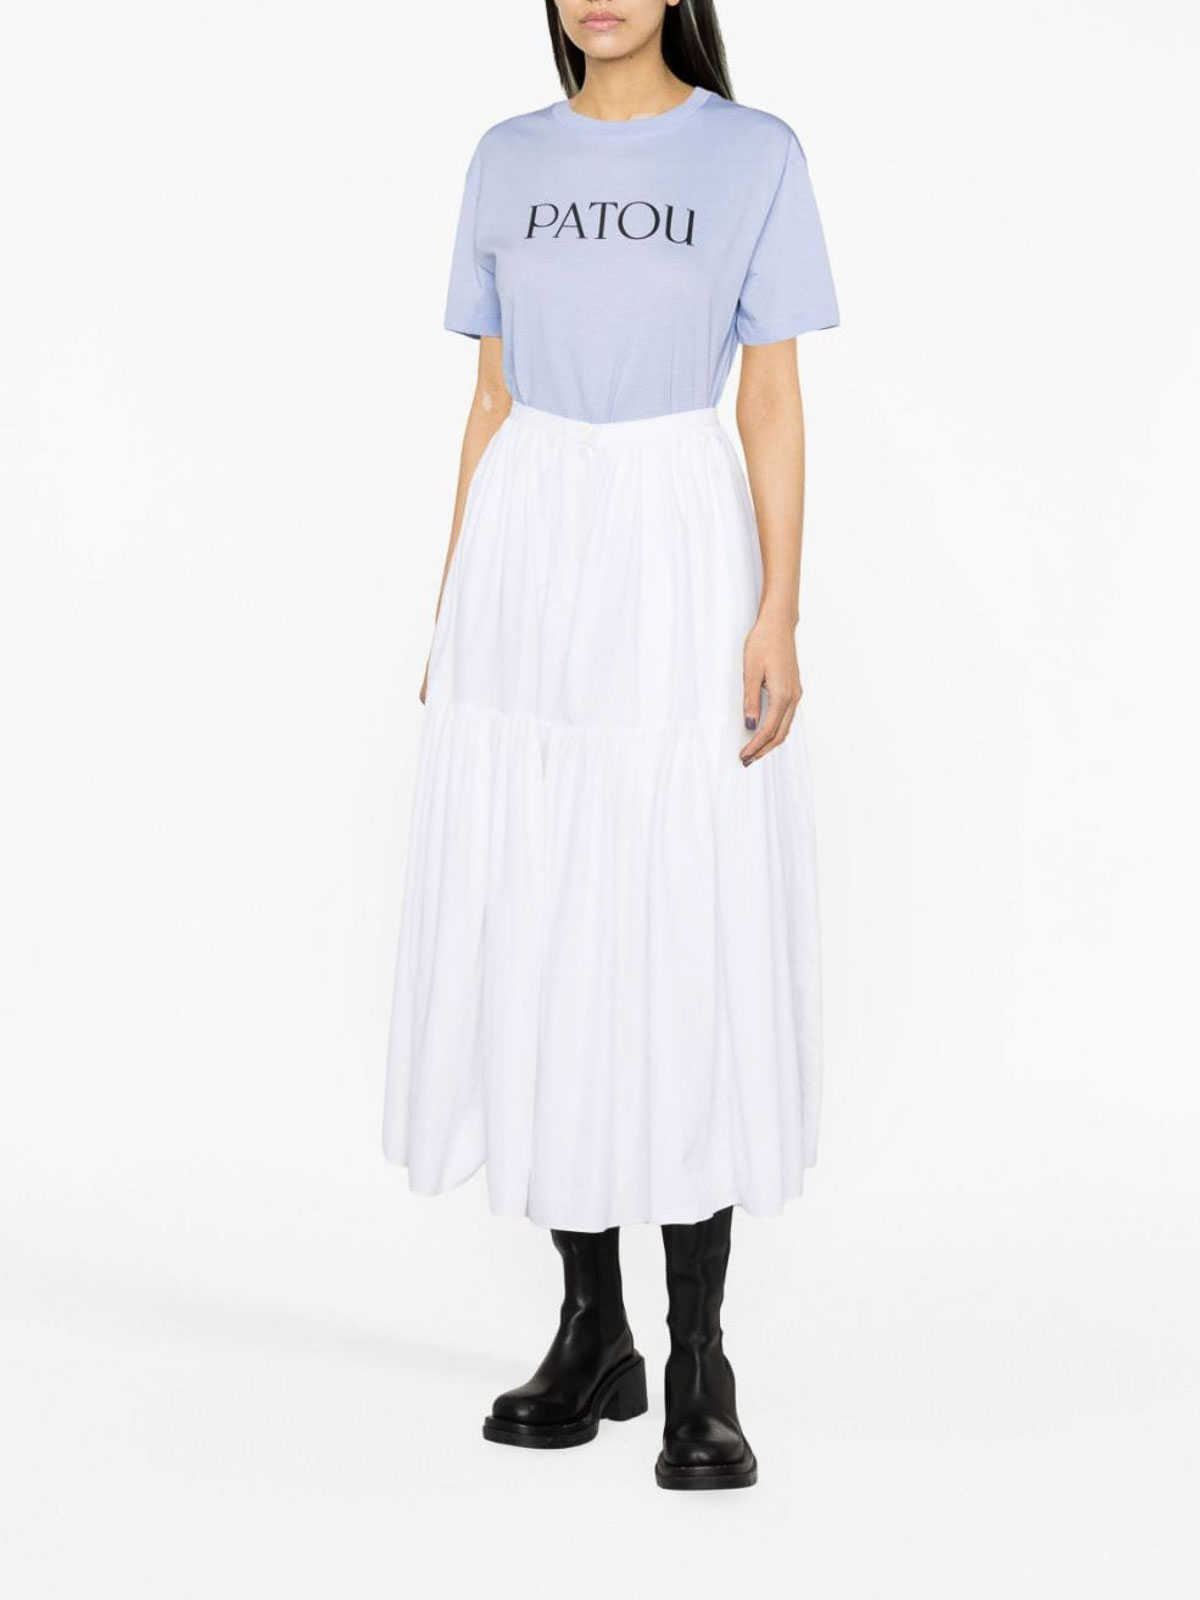 PATOU - Cotton Shirt